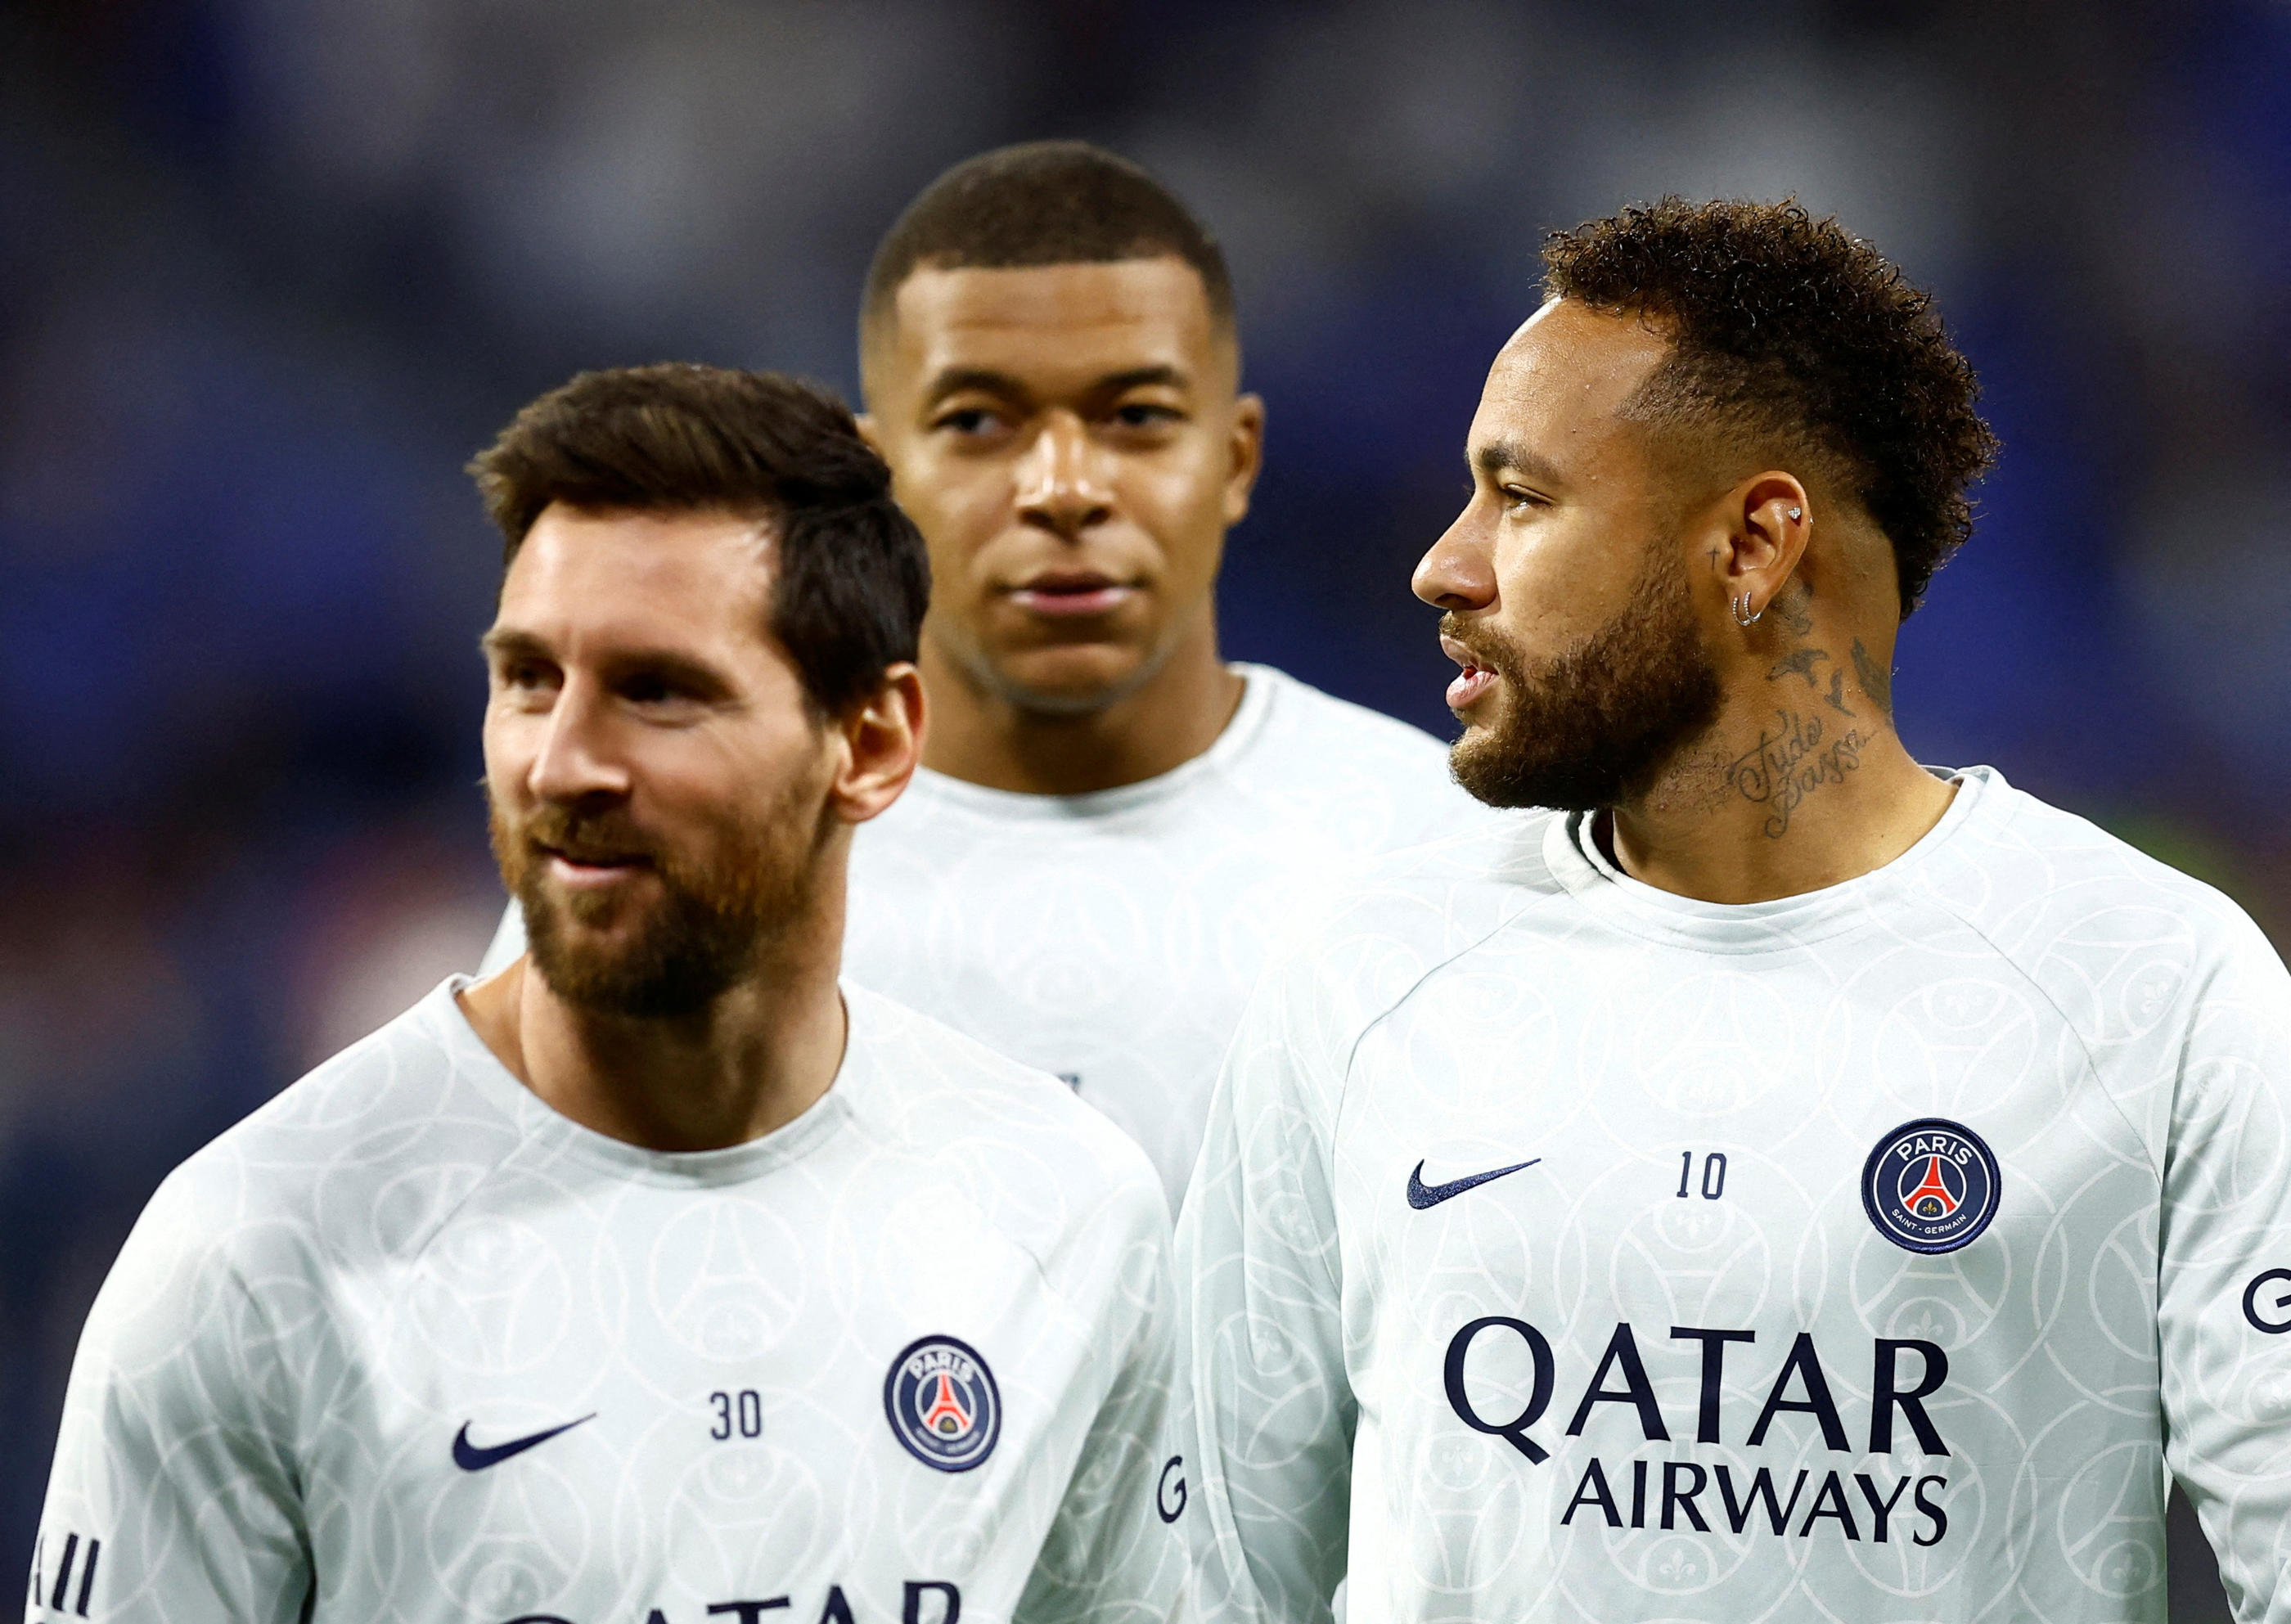 Messi, Mbappé et Neymar présentent des états de forme physique et mentale différents que Galtier compte uniformiser durant la dizaine de jours avant le match contre Reims, le 29 janvier. Reuters/Stéphane Mahé